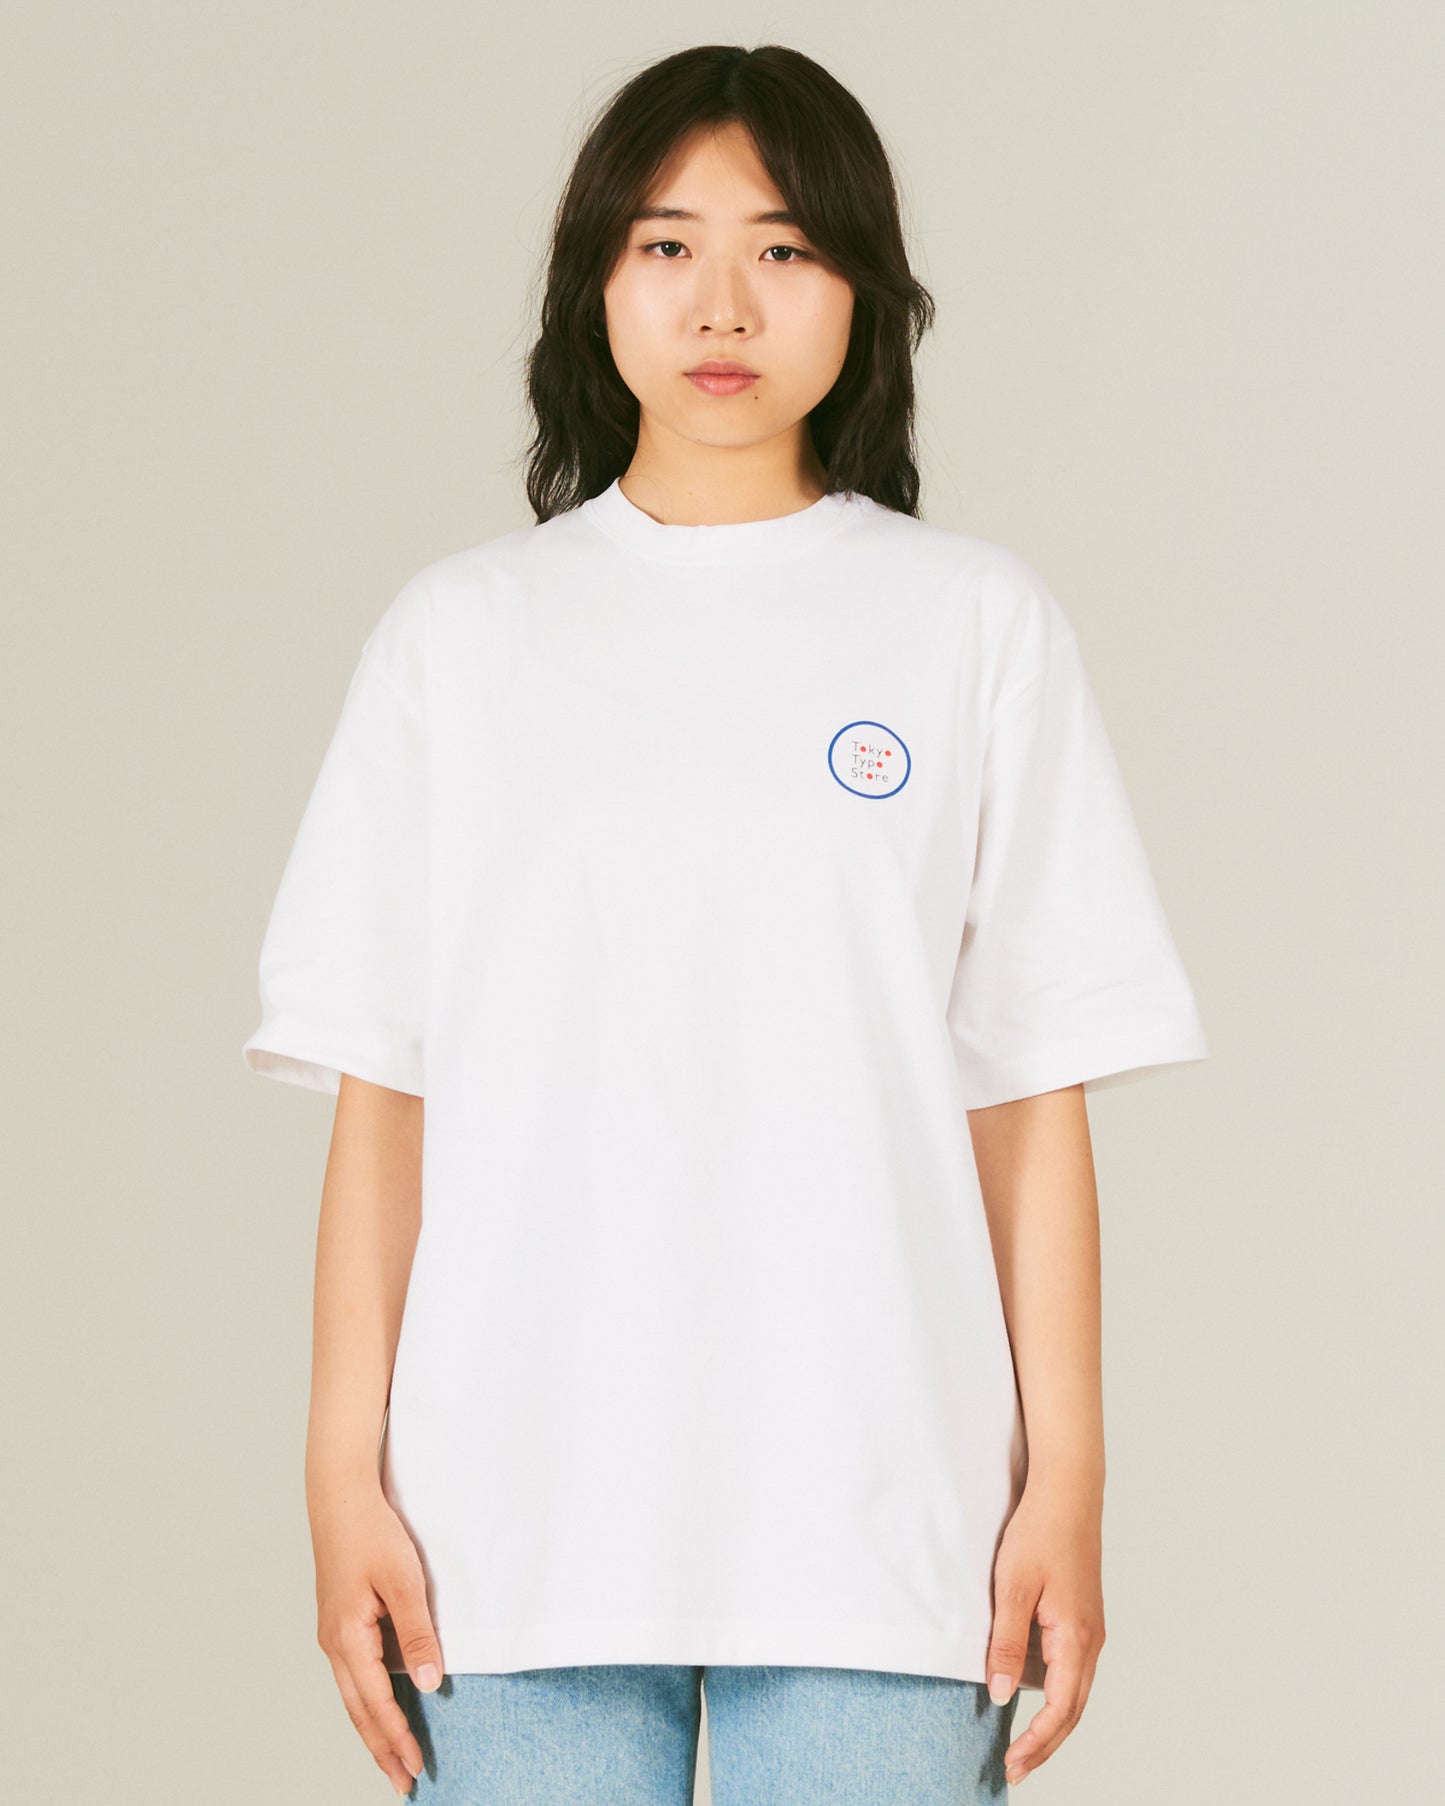 目 / Eye T-Shirt BACK PRINT